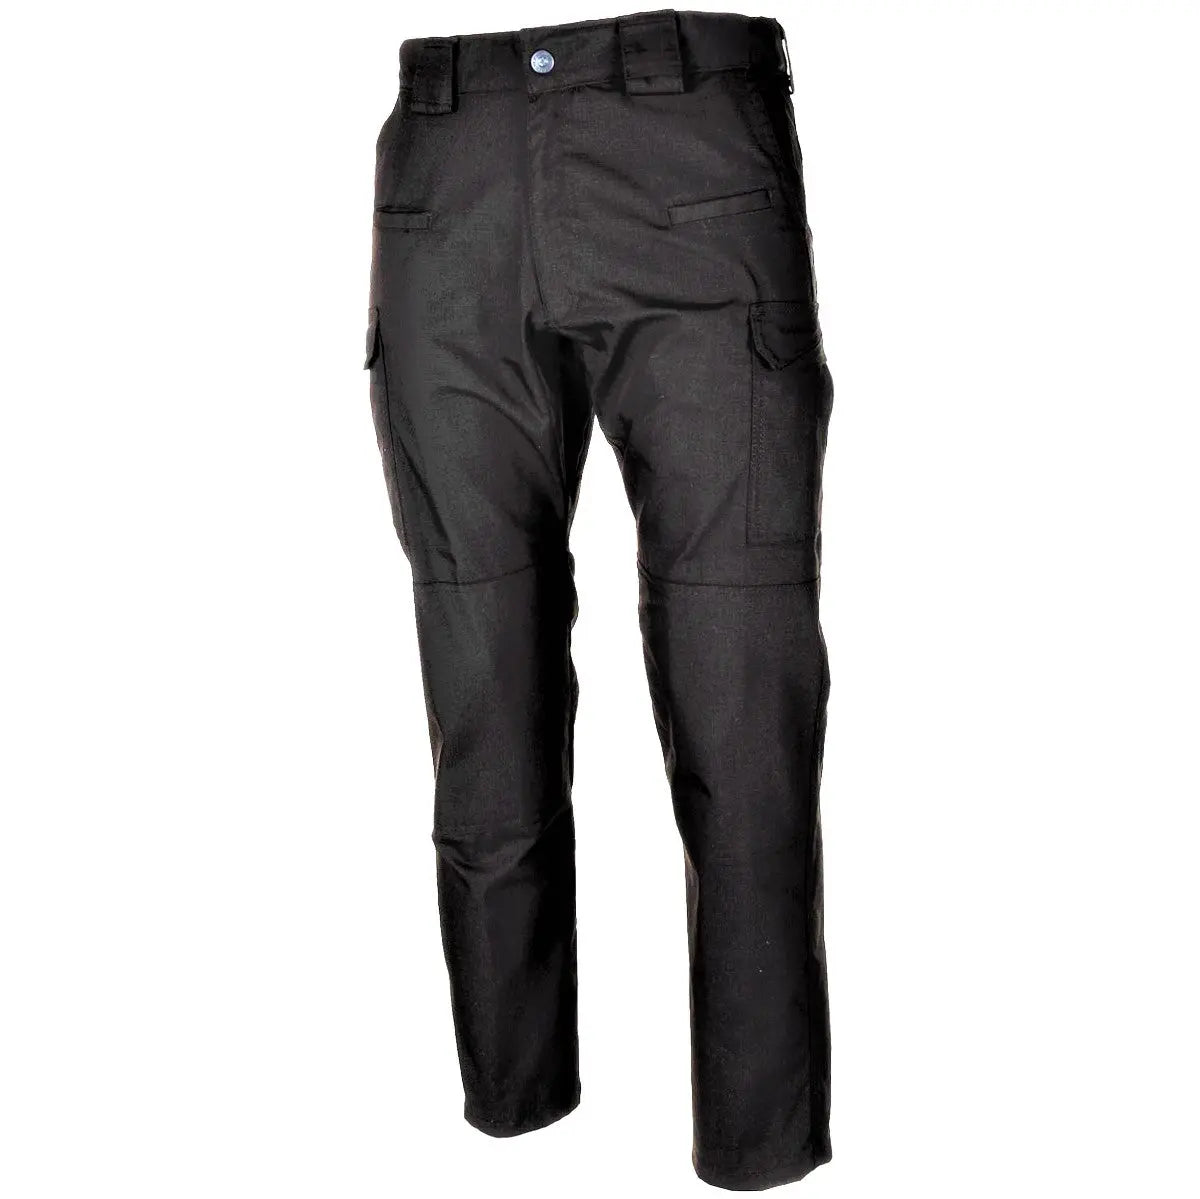 Tactical Pants, "Attack", Teflon, Rip Stop, black NSO Gear